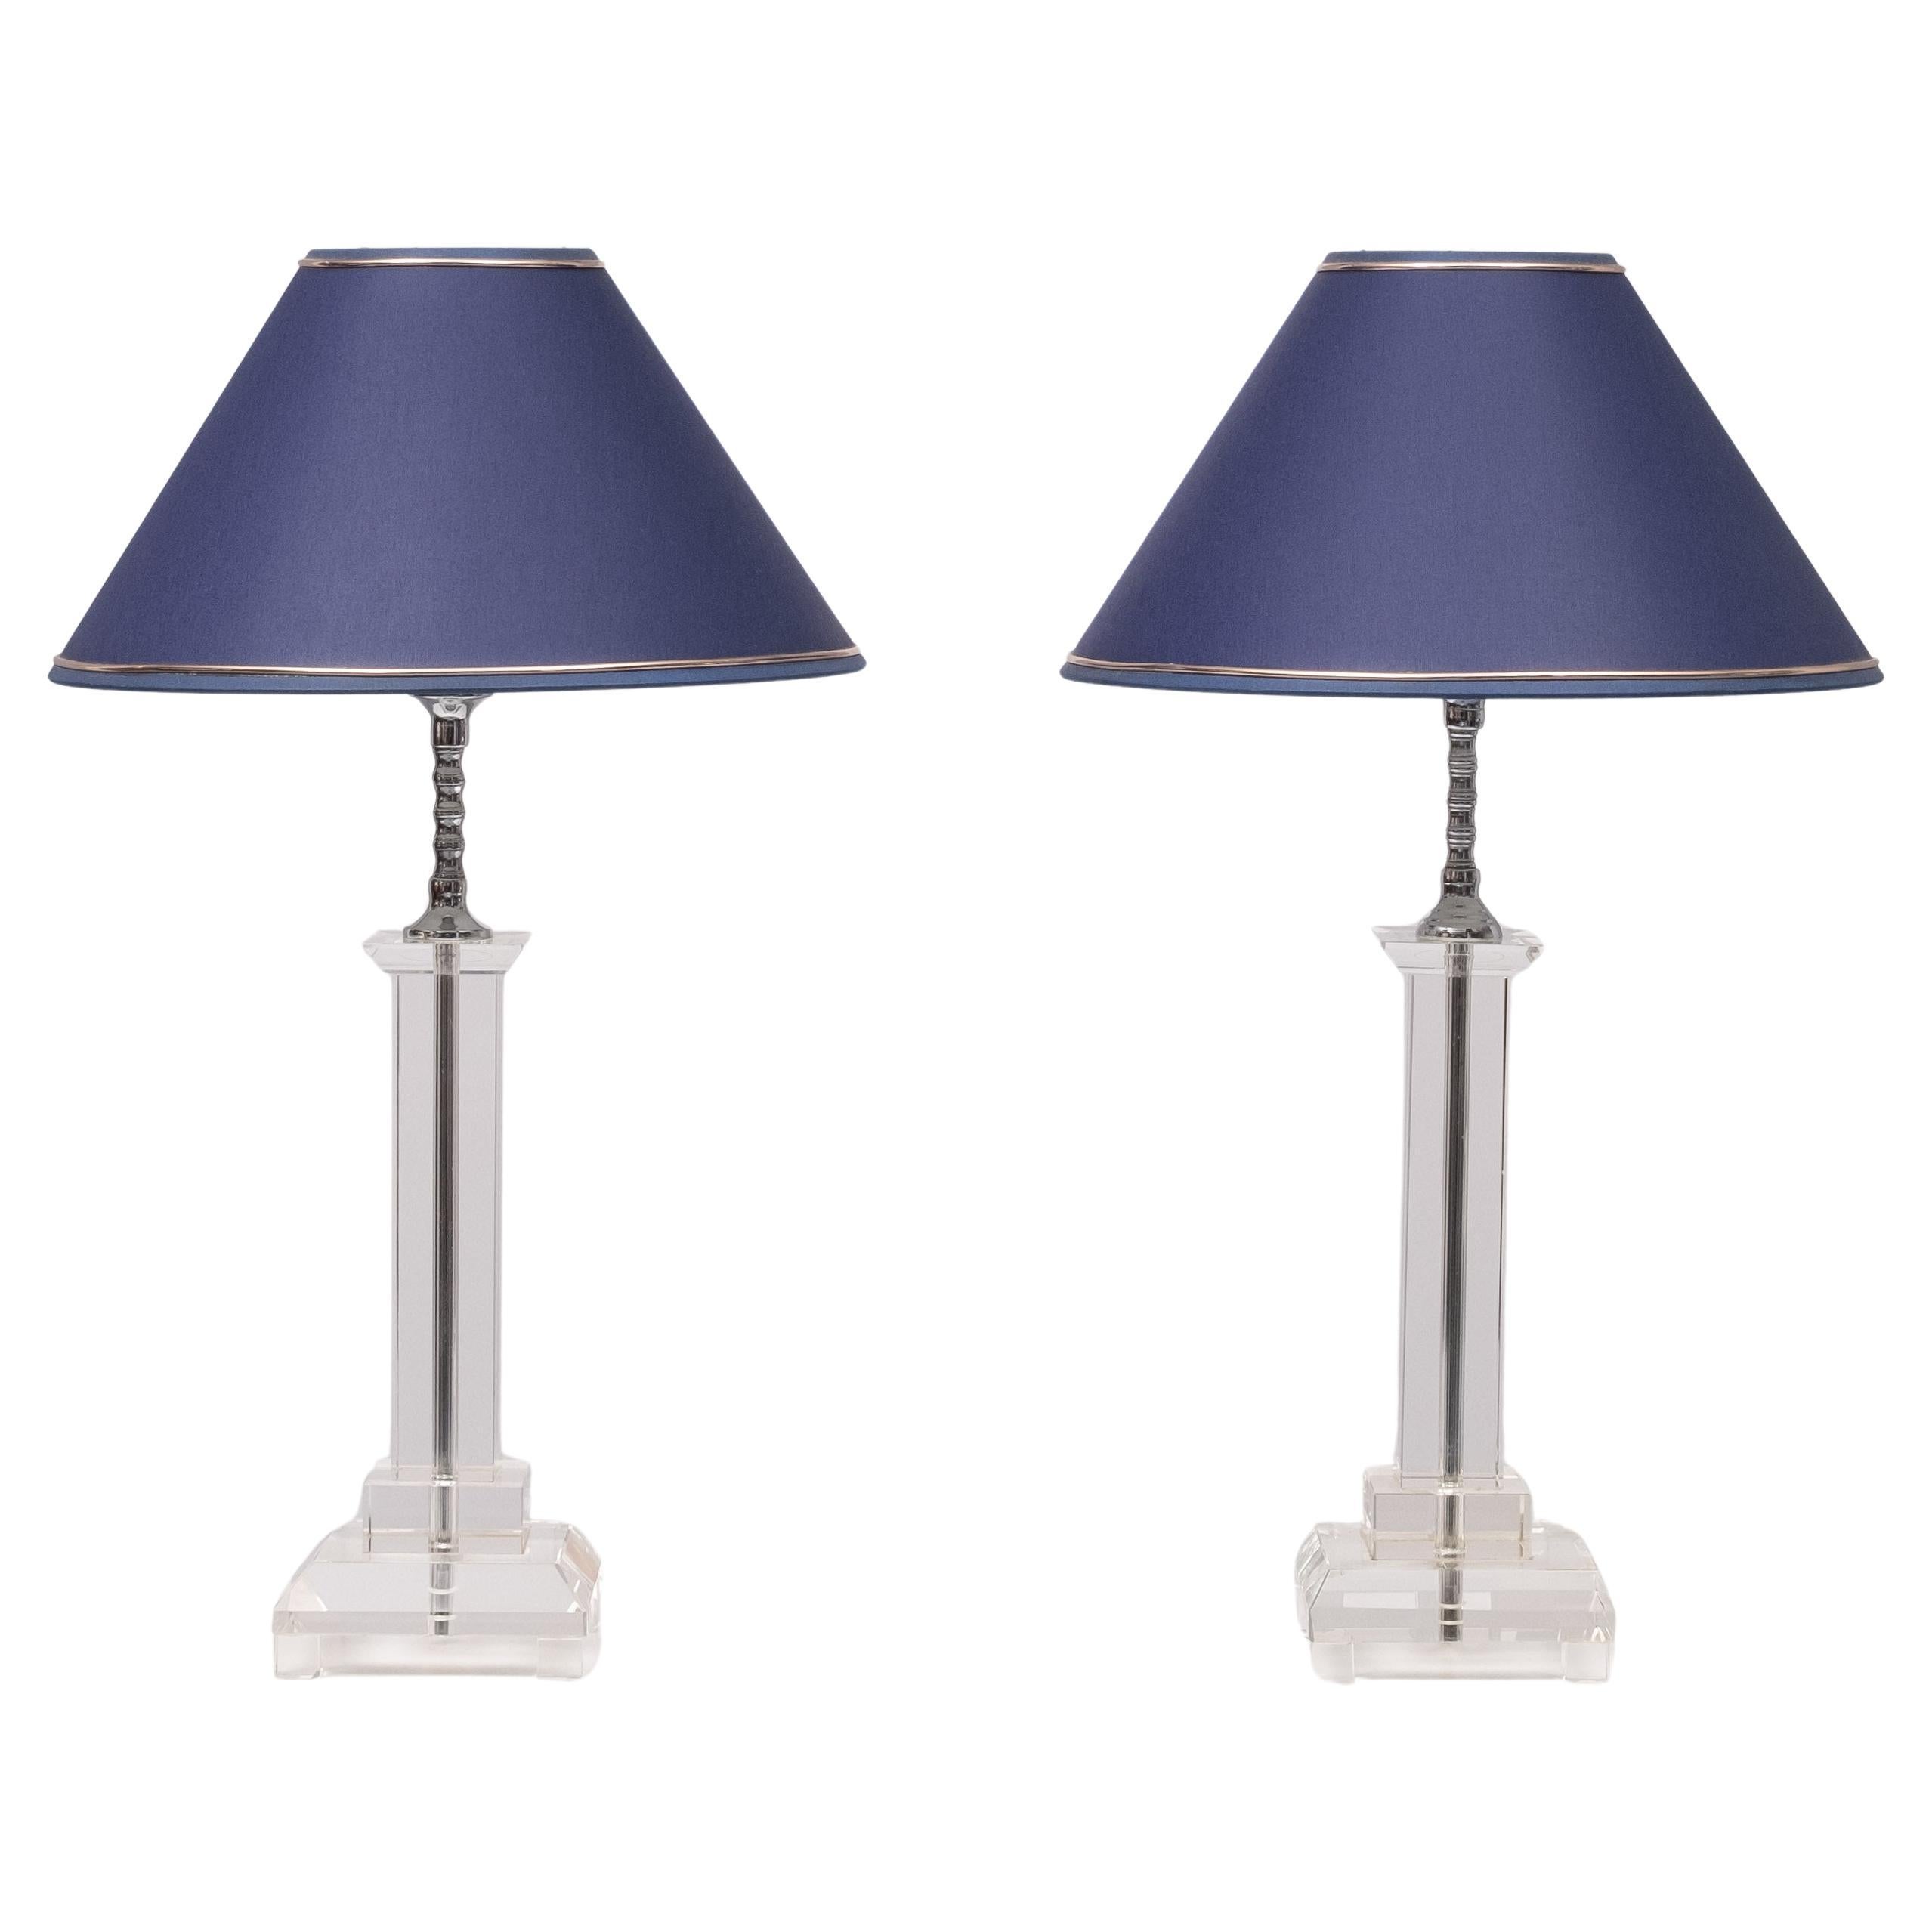 Lampe de table en verre taillé Brilliante adopte une forme classique avec une finition cristalline.   La lampe en cristal Up&Up illuminera à coup sûr n'importe quelle pièce. Les abat-jour inclus sont d'une belle couleur bleue. 
